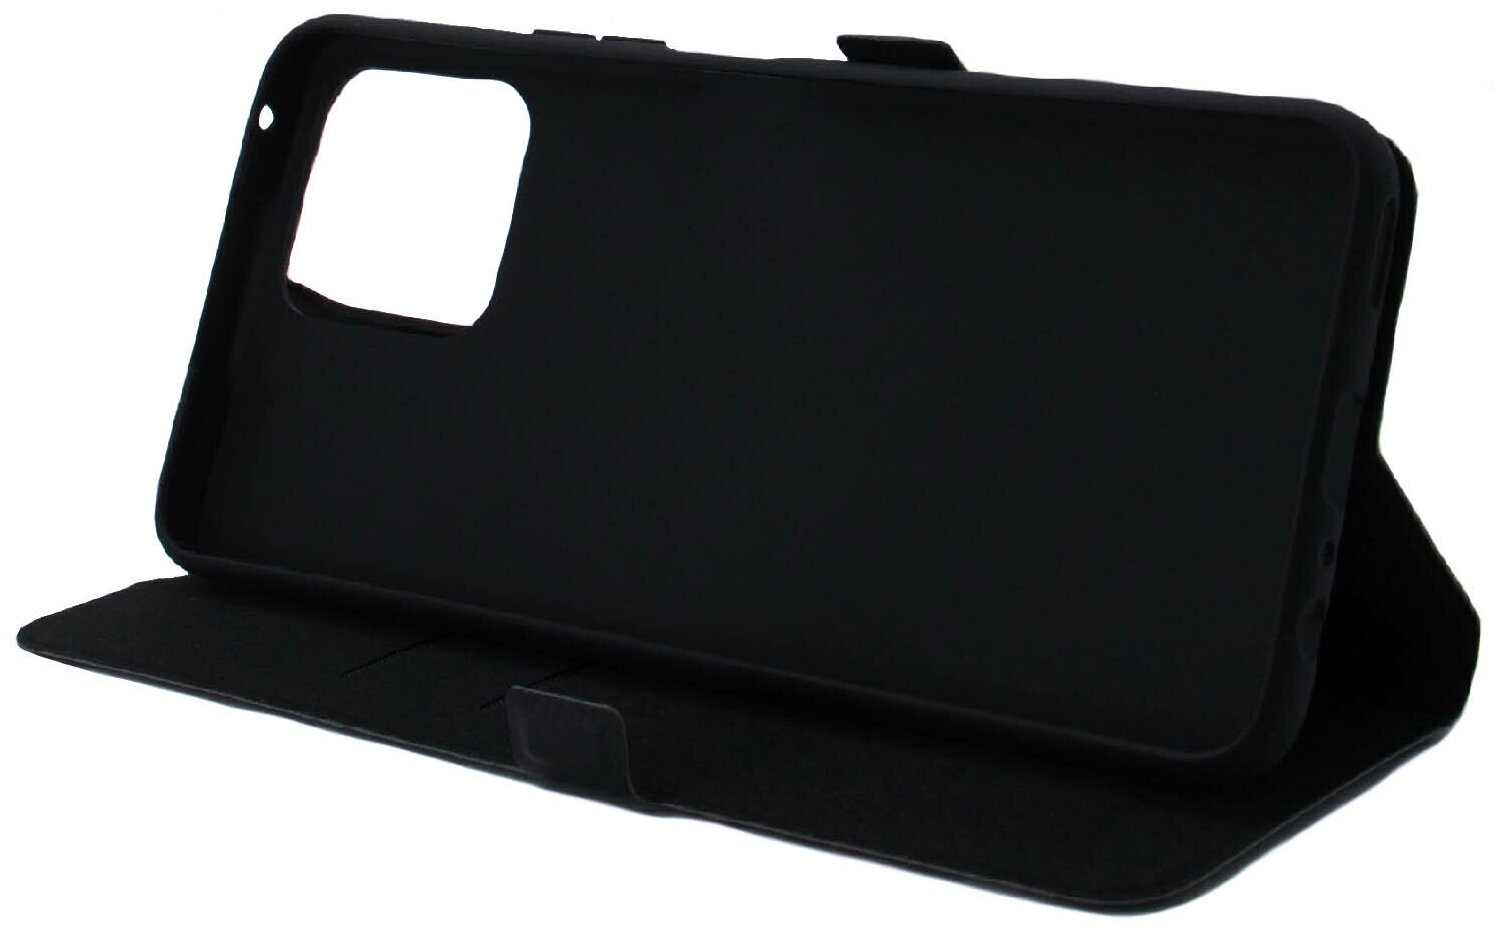 Чехол на Honor X8 (Хонор Х8) эко кожа черный с функцией подставки отделением для пластиковых карт и магнитами для фиксации крышки Brozo